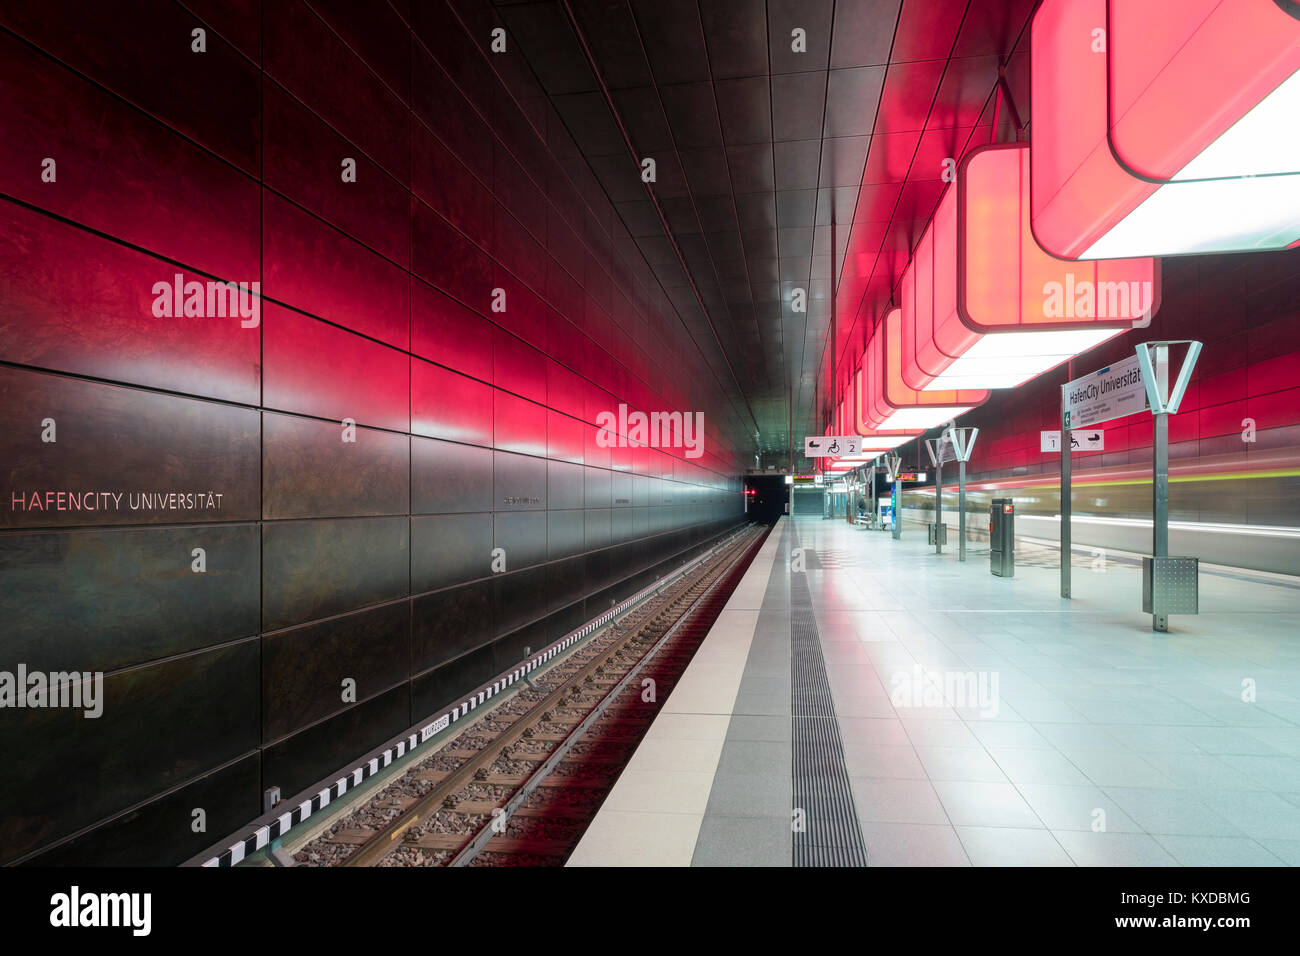 La moderna estación de U-bahn hafencity Universitat de la línea U4, hafencity, Hamburgo, Alemania. Foto de stock